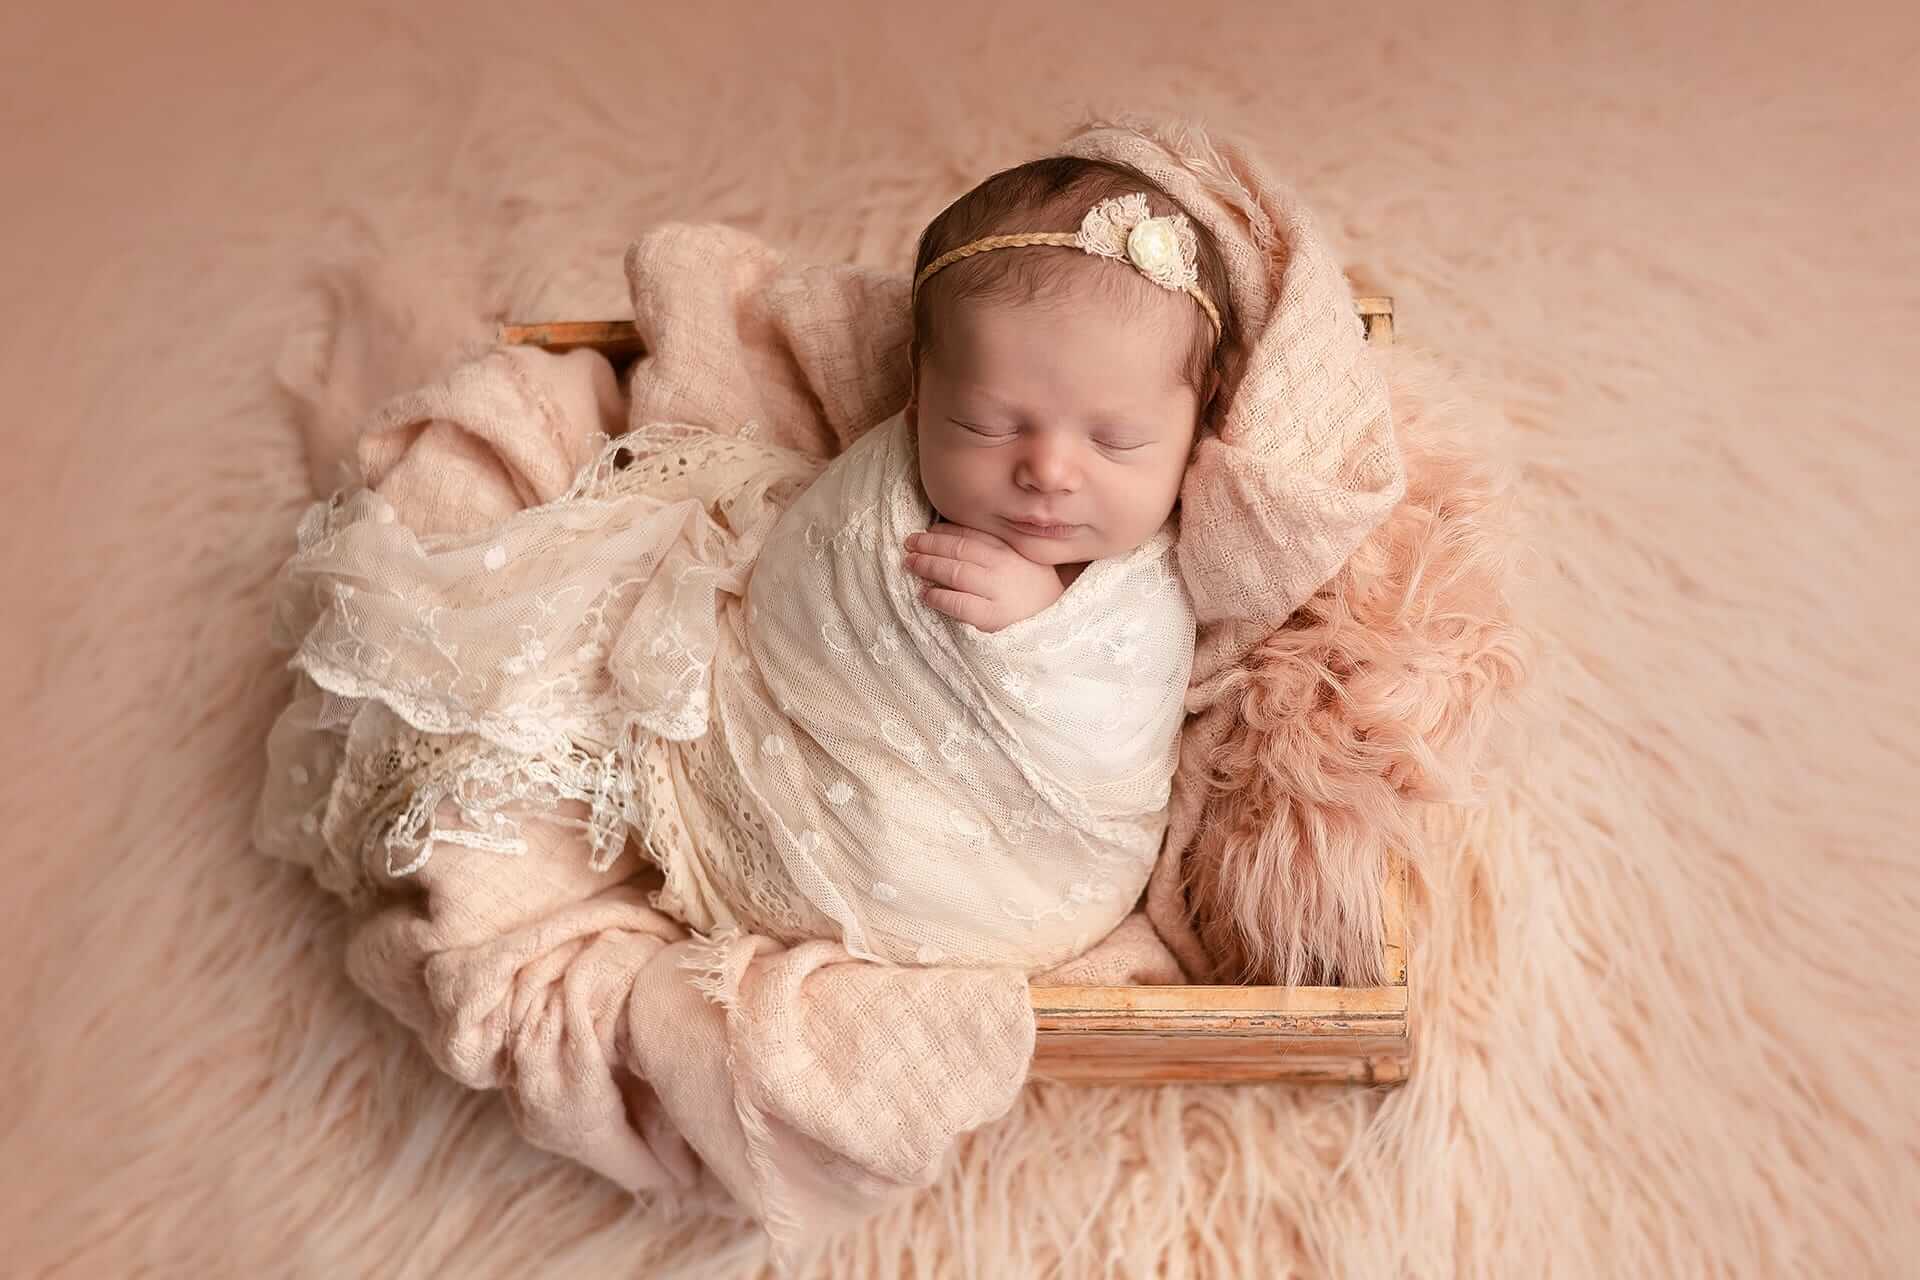 Un bébé fille est enveloppée dans une couverture rose dans une boîte en bois. Le photographe capture de magnifiques photos du nouveau-né.